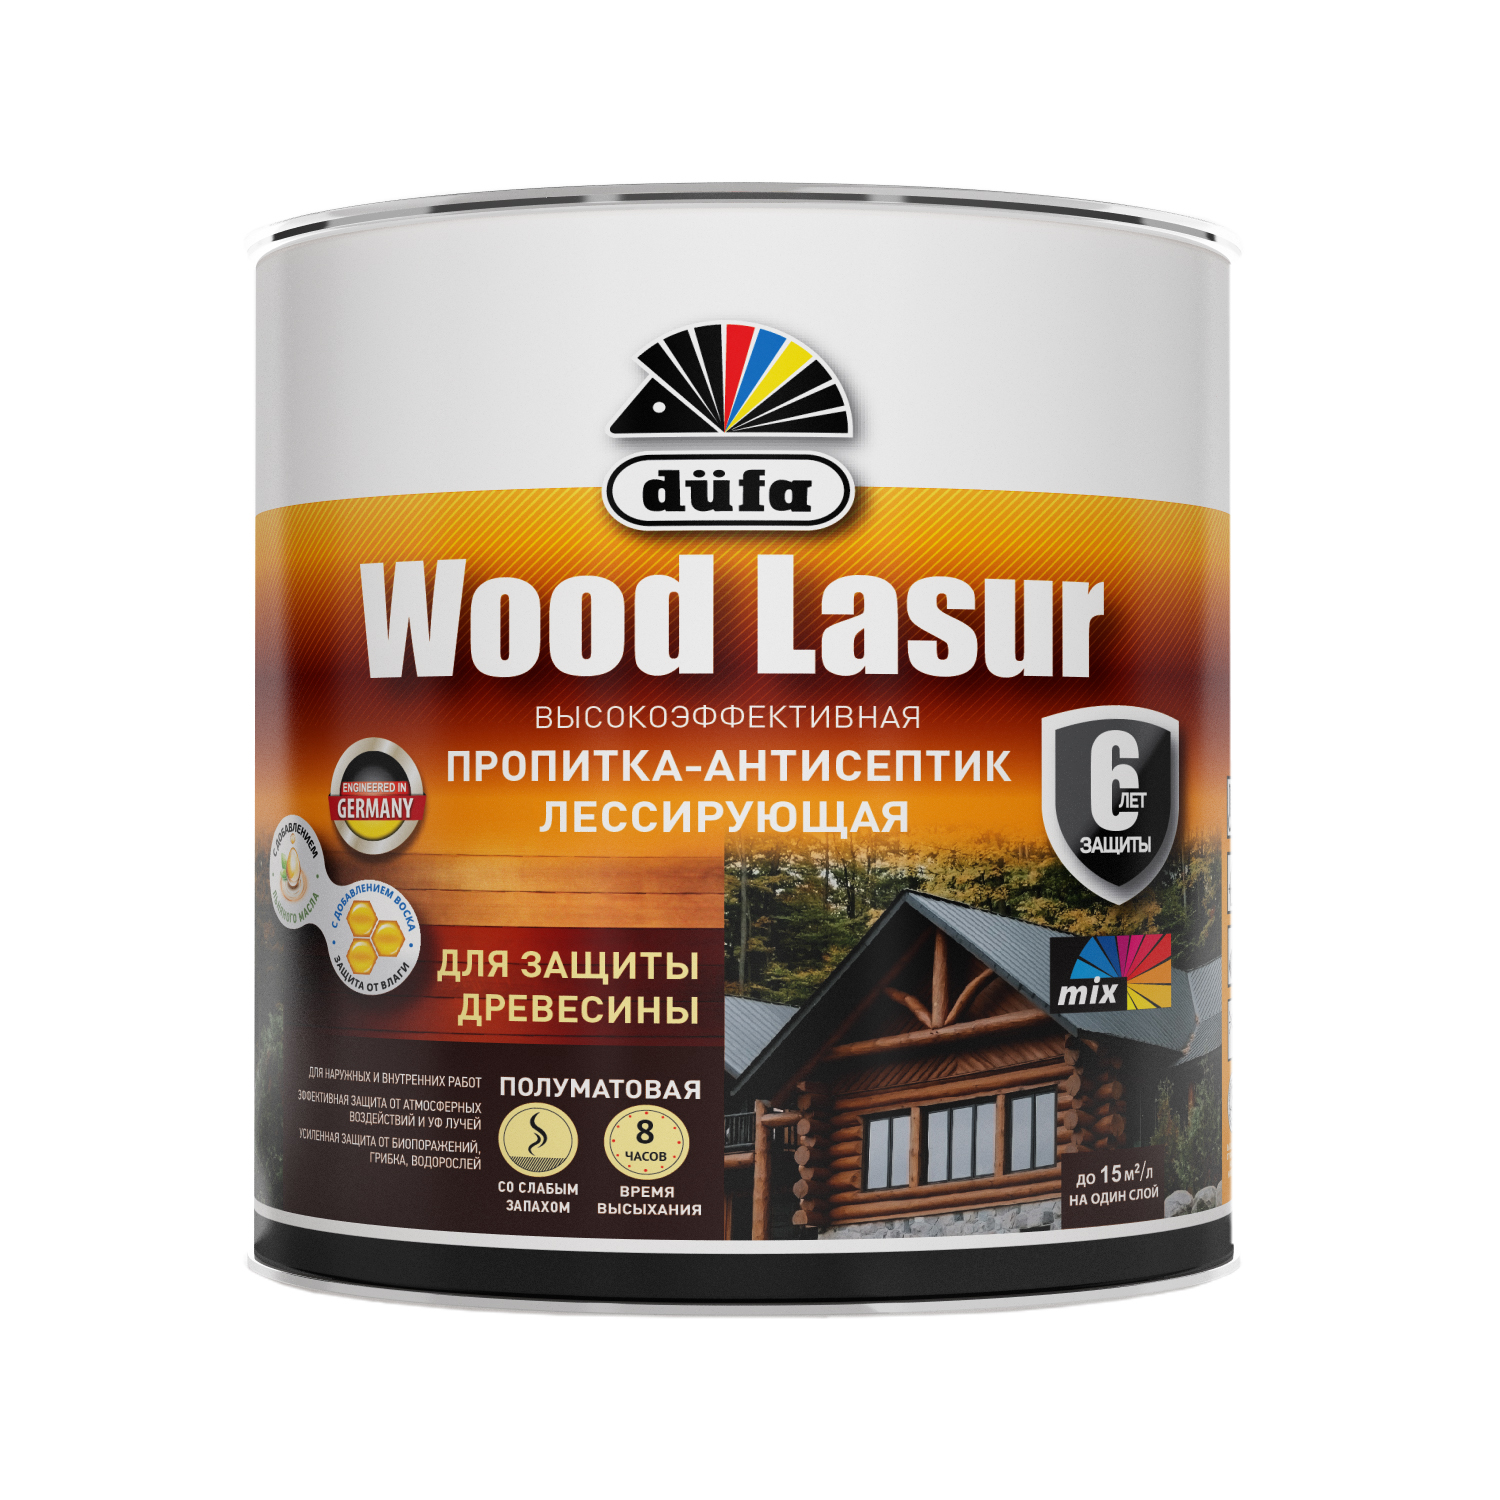 фото Пропитка для дерева dufa wood lasur сосна, 900 мл